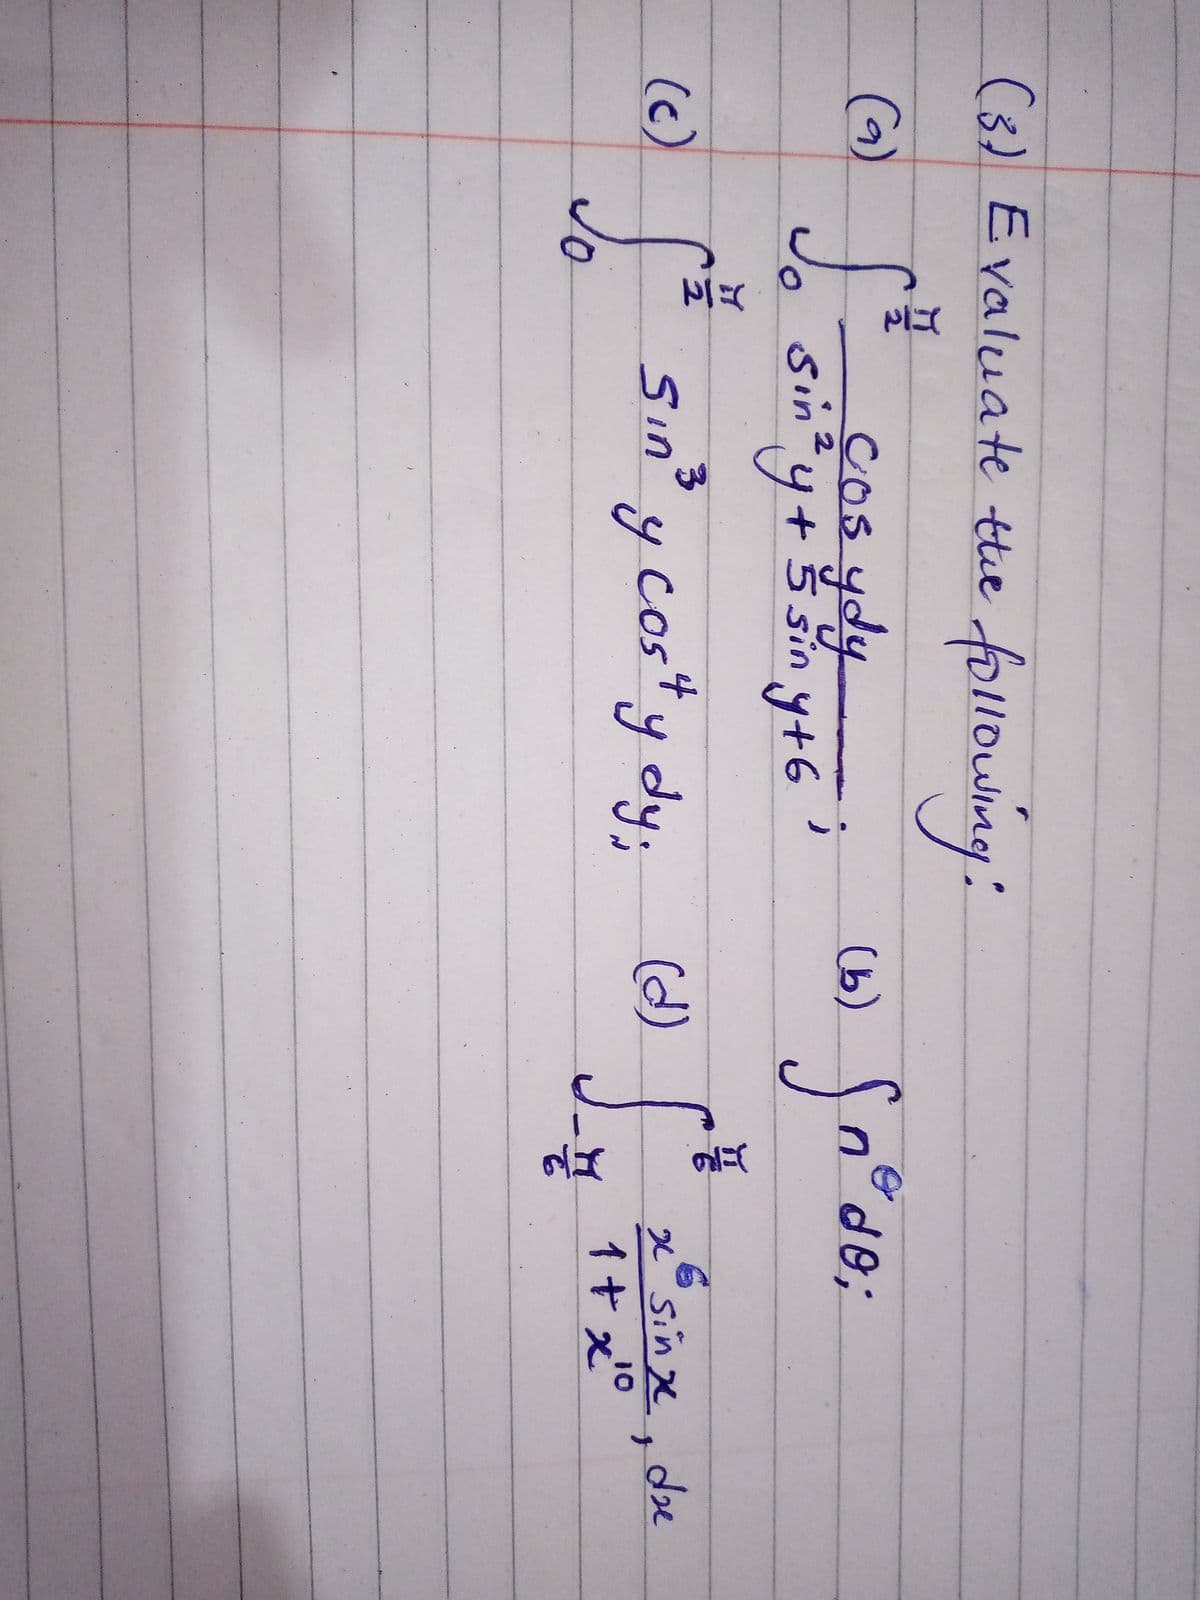 (1)
(3) Evaluate tthe following:
(6) cos ydy
(9)
(b) n°de;
COS4
sintyt
2
y
+ 5 sin y+6
f* sin' y cos" y dy;
y cos*y
xSinge.de
1+ x°
(d)
(c)
Jo
Sın
yody
10
